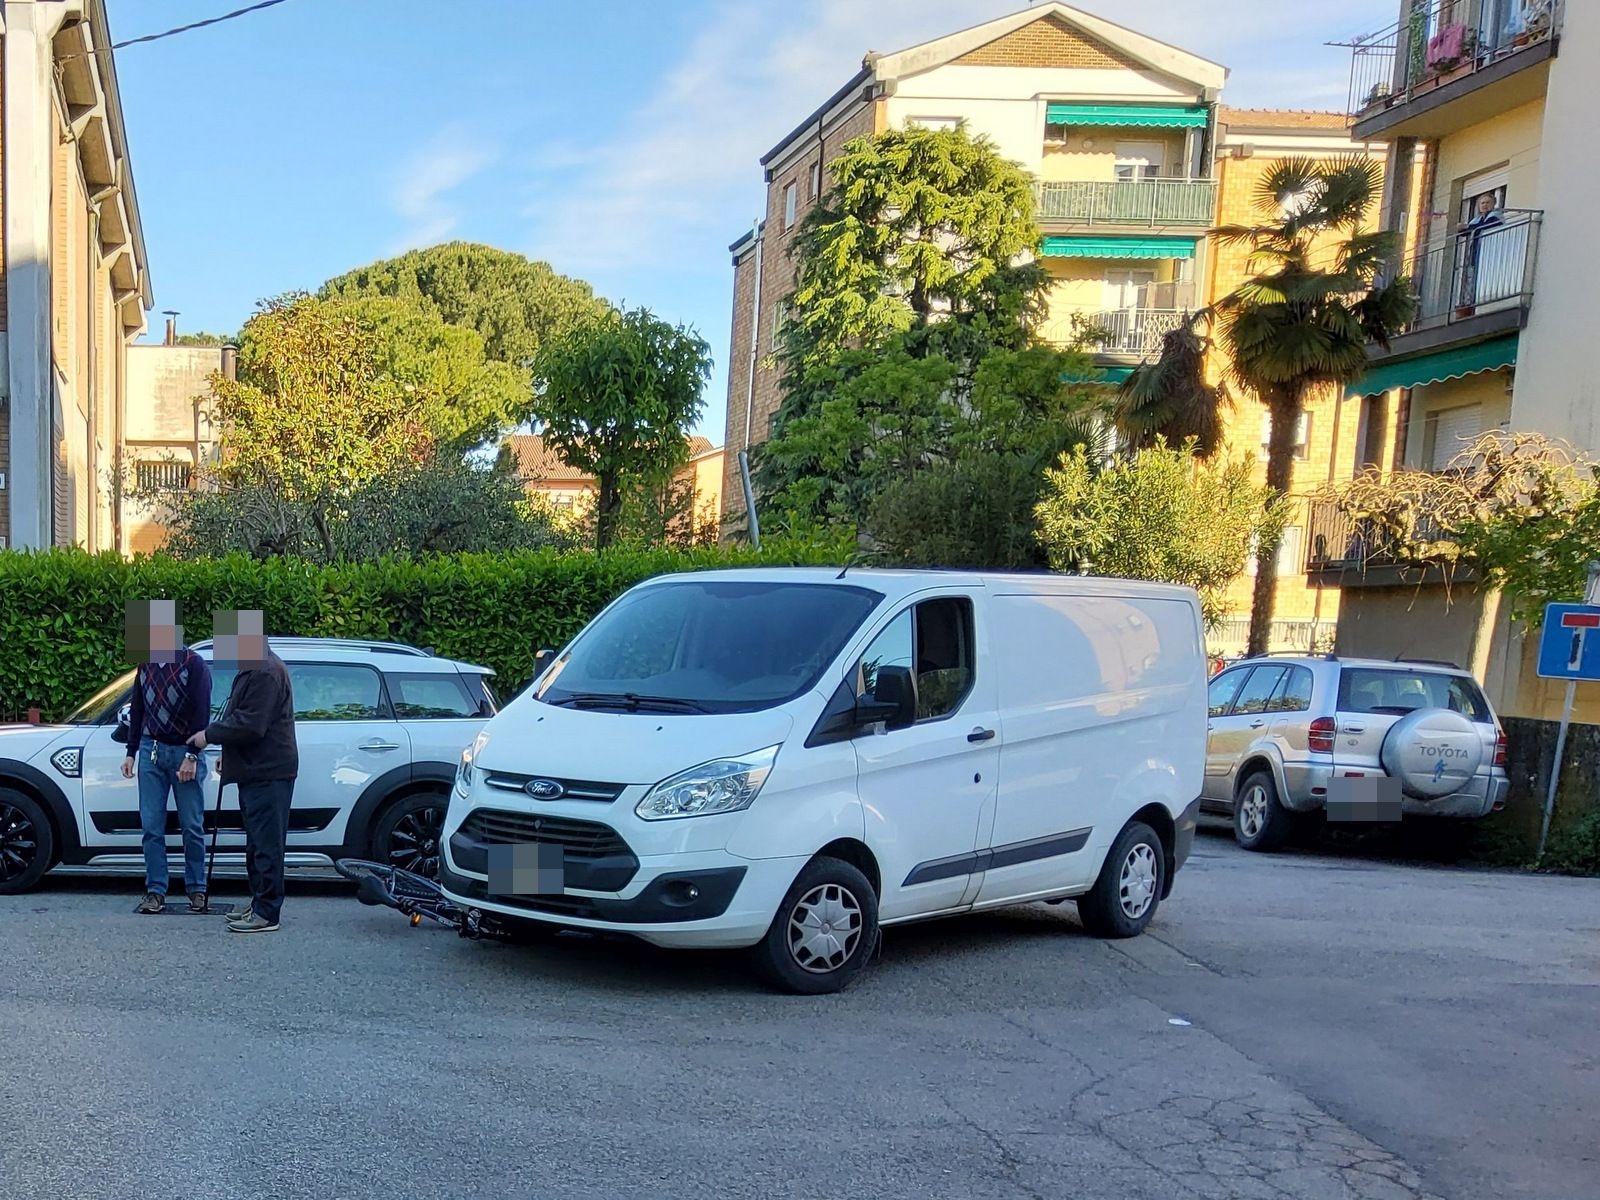 Incidente a Faenza: bambino di 10 anni investito in bici da un furgone